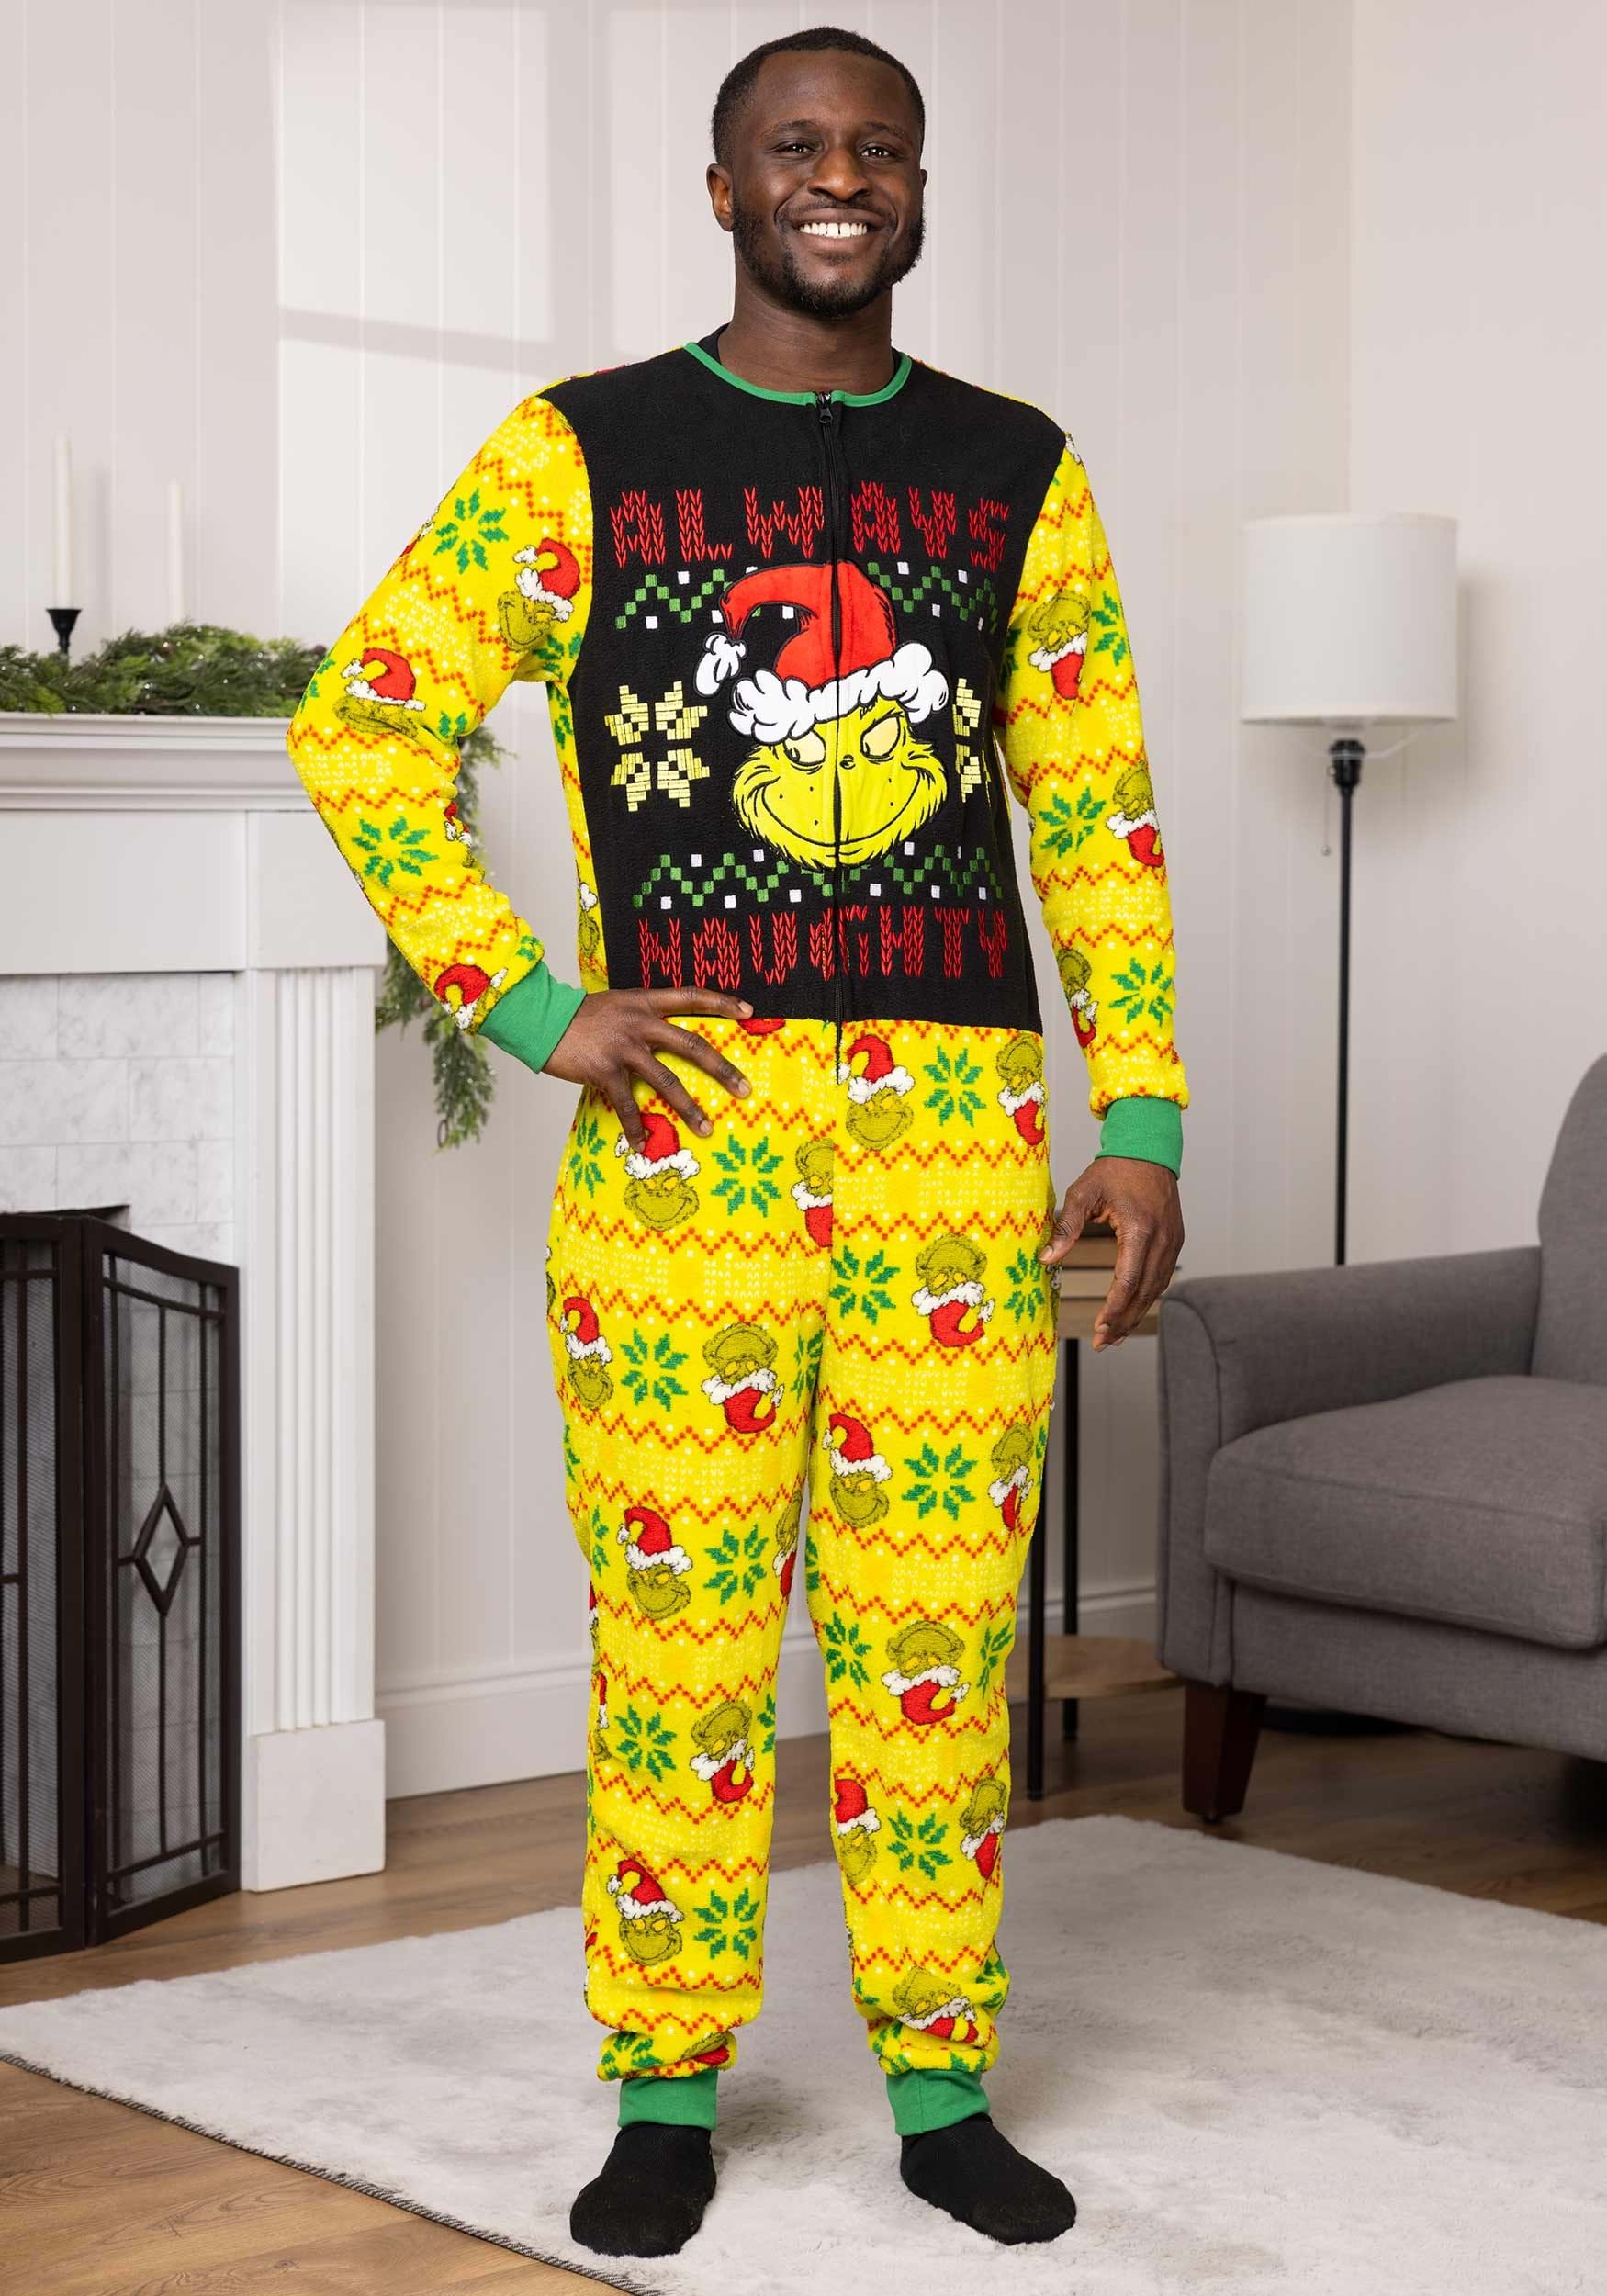 JoJo Siwa Girls' Can Do It All Zipper Sleeper Union Suit Pajama